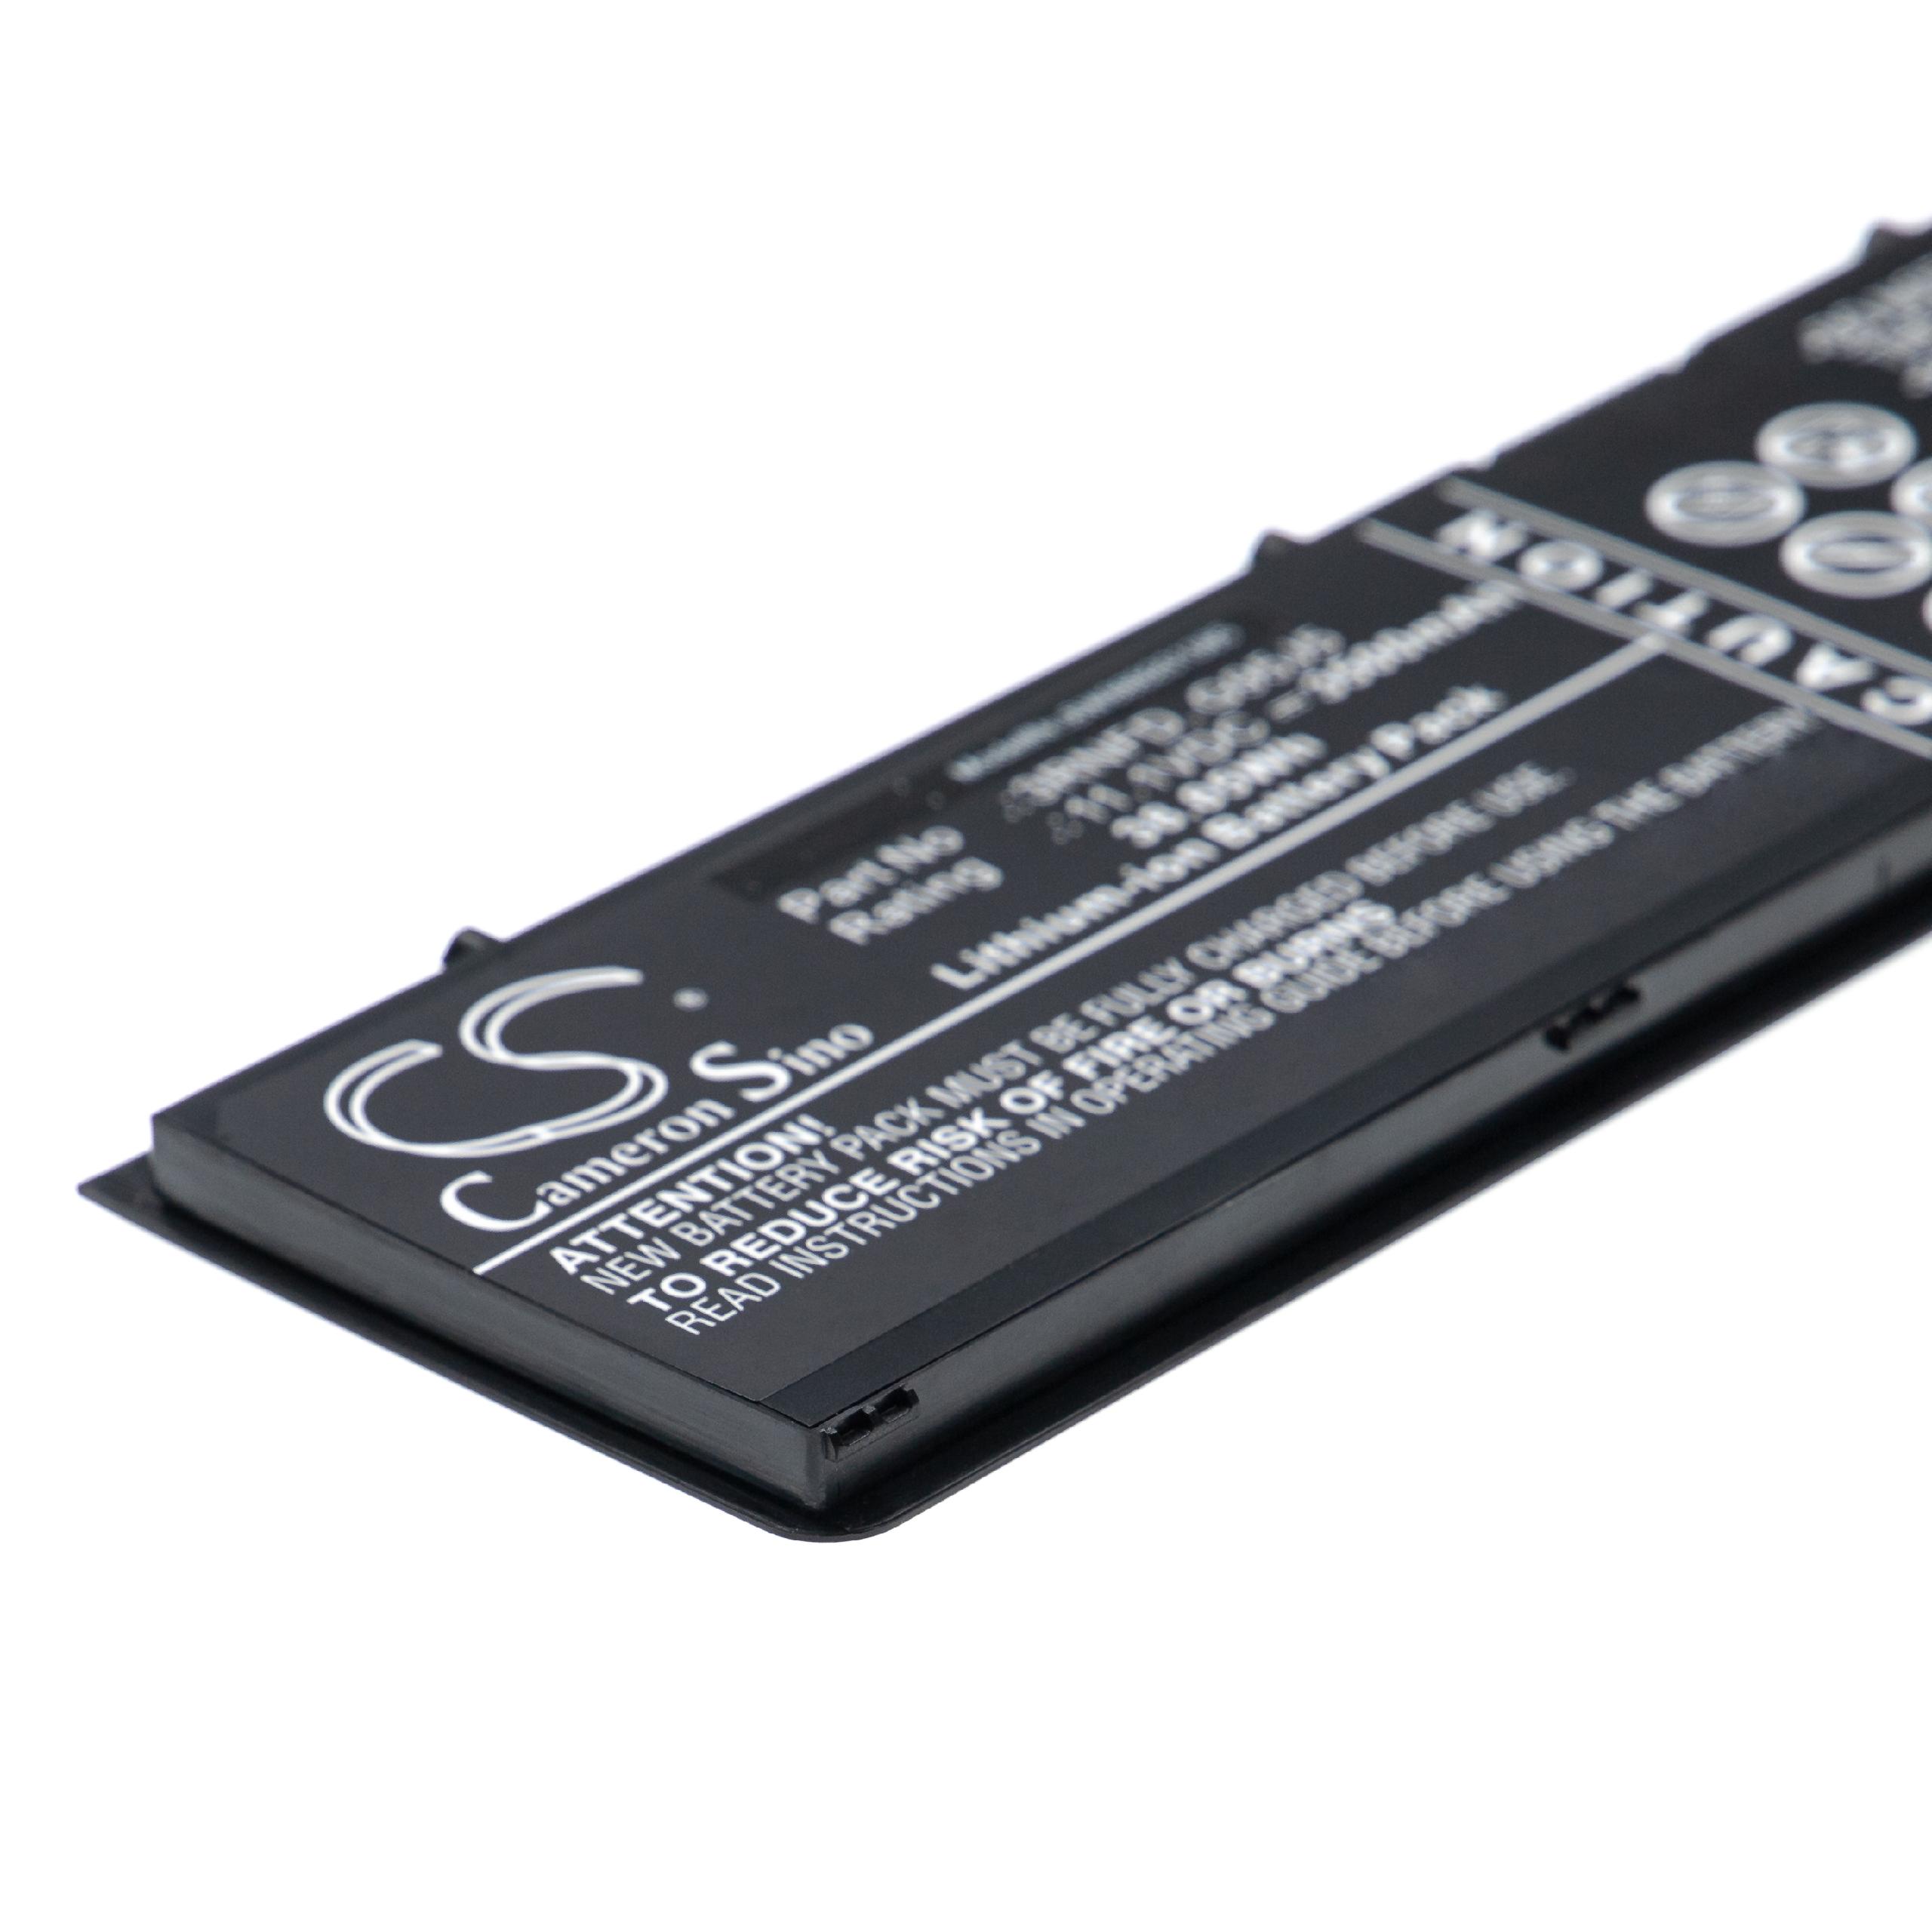 Batterie remplace Dell 3RNFD, 34GKR, 451-BBFT, 451-BBFS pour ordinateur portable - 3500mAh 11,1V Li-ion, noir